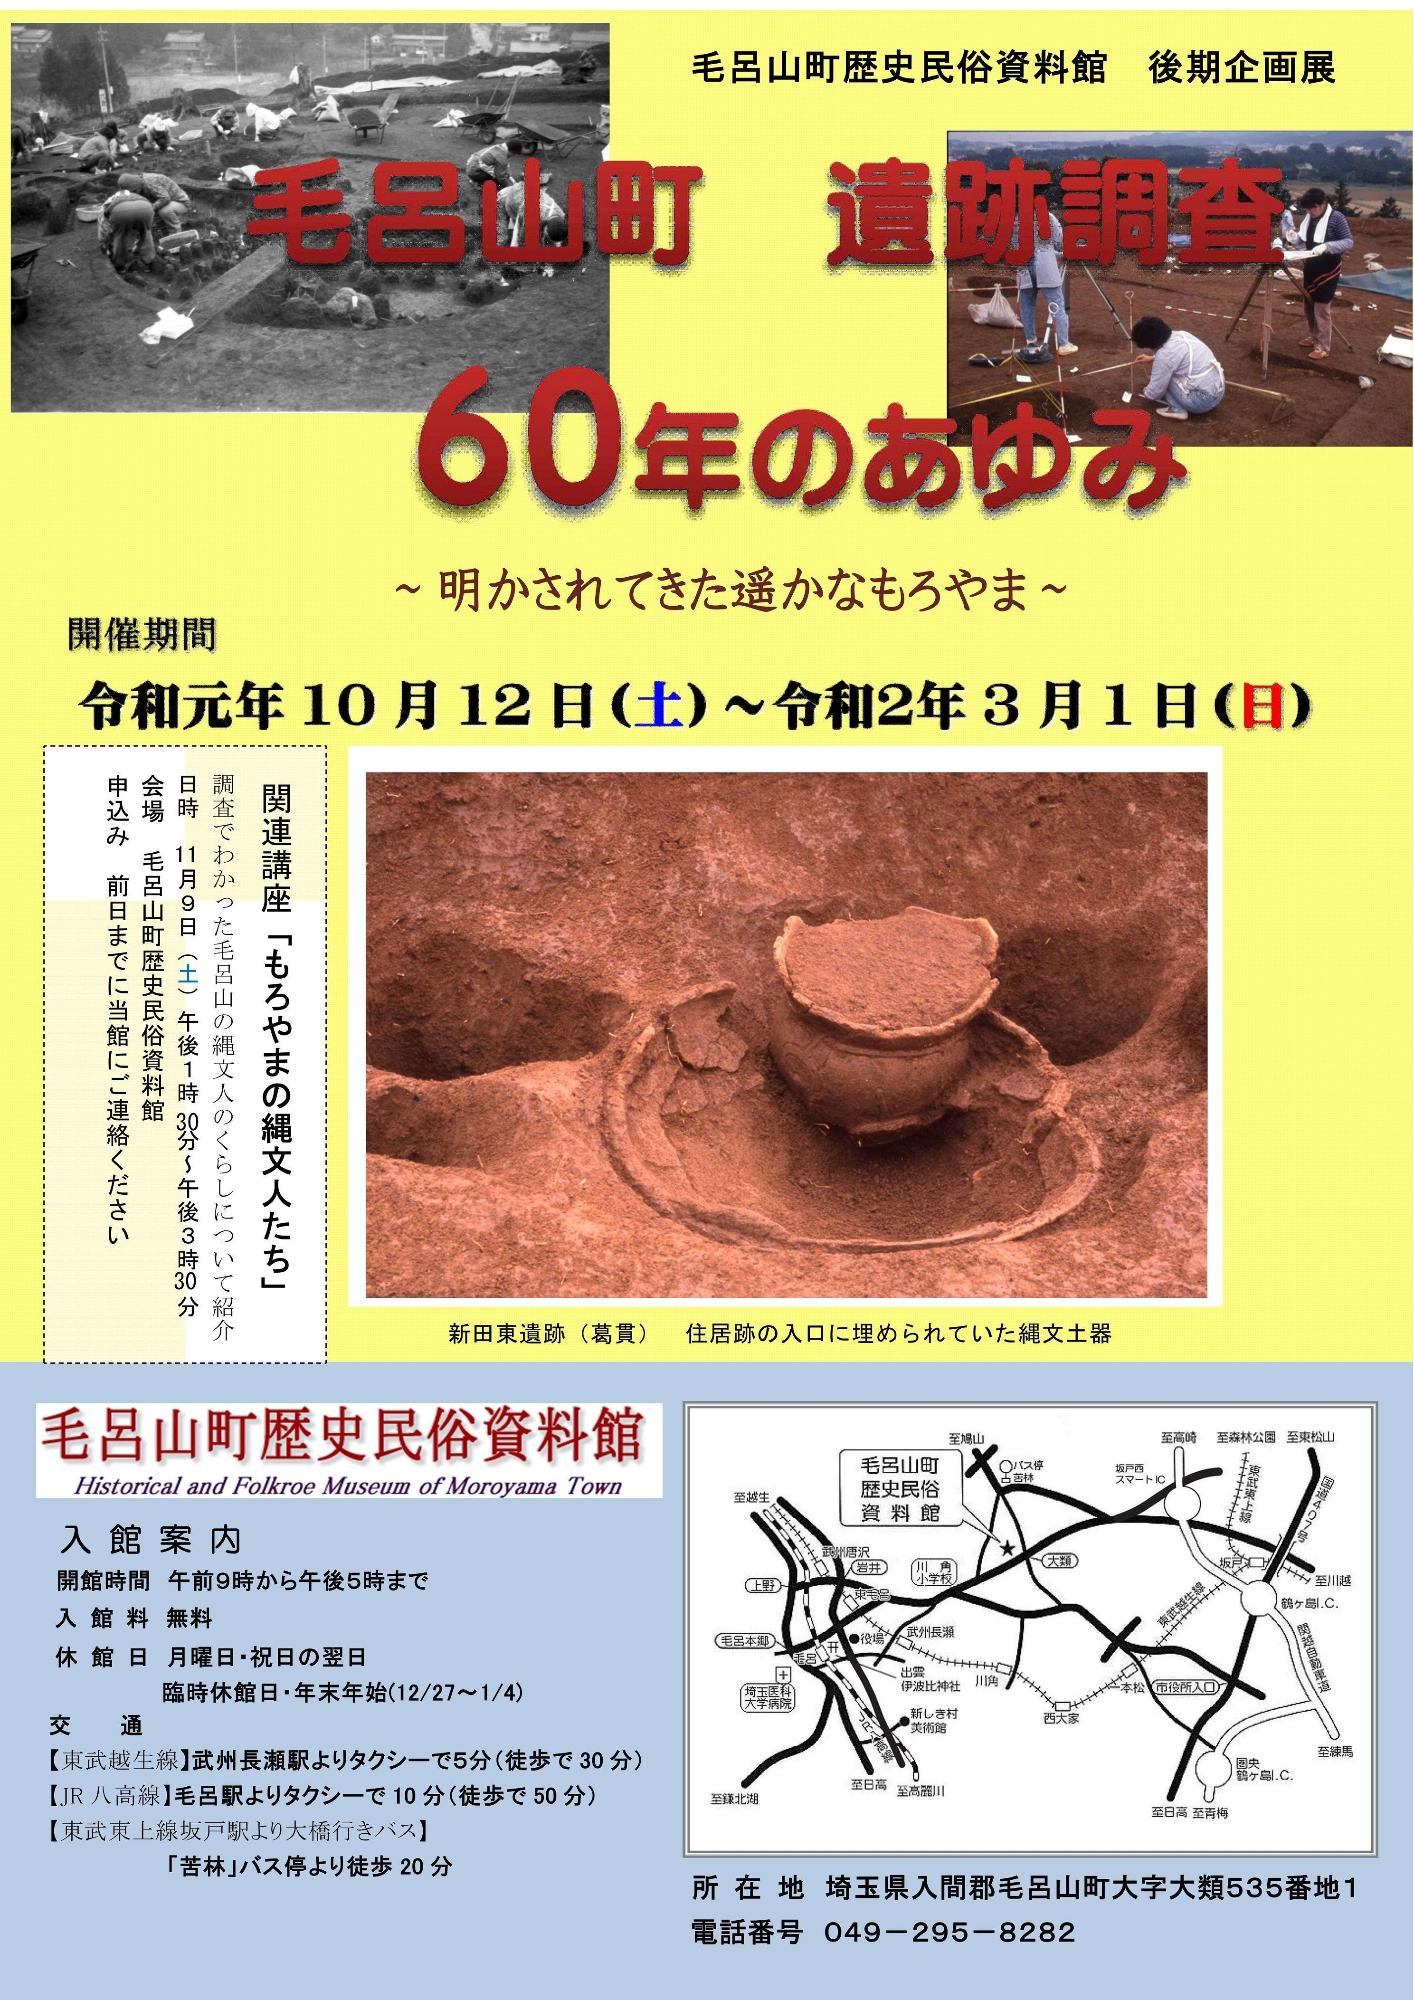 毛呂山町遺跡調査 60年のあゆみのチラシ